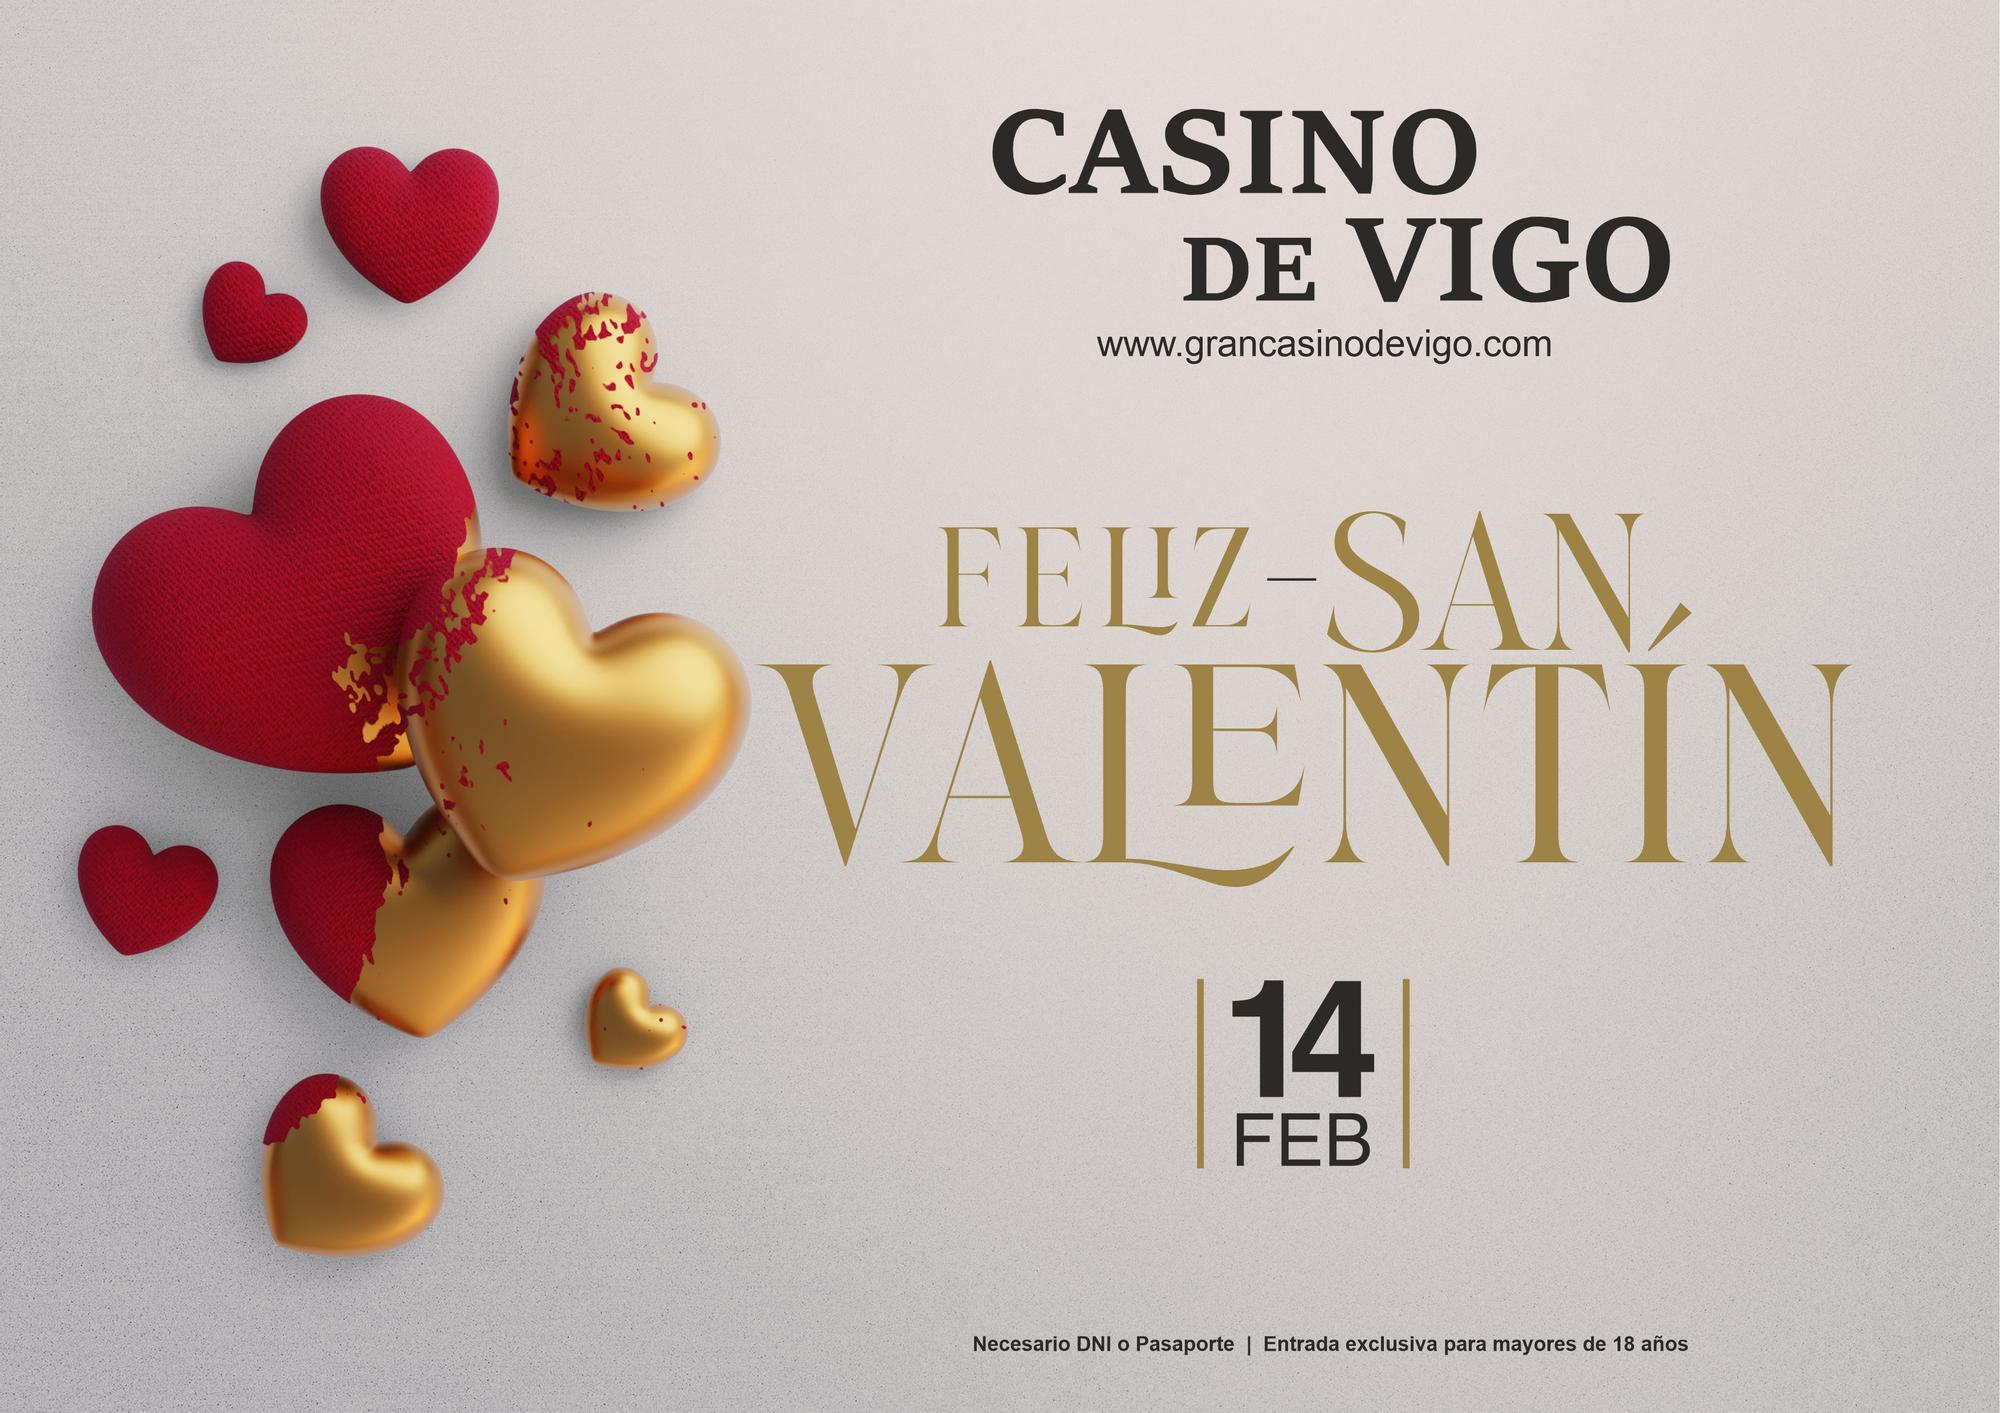 El Casino de Vigo presenta una propuesta irresistible para el Día de los Enamorados con un menú diseñado con mucho amor para San Valentín